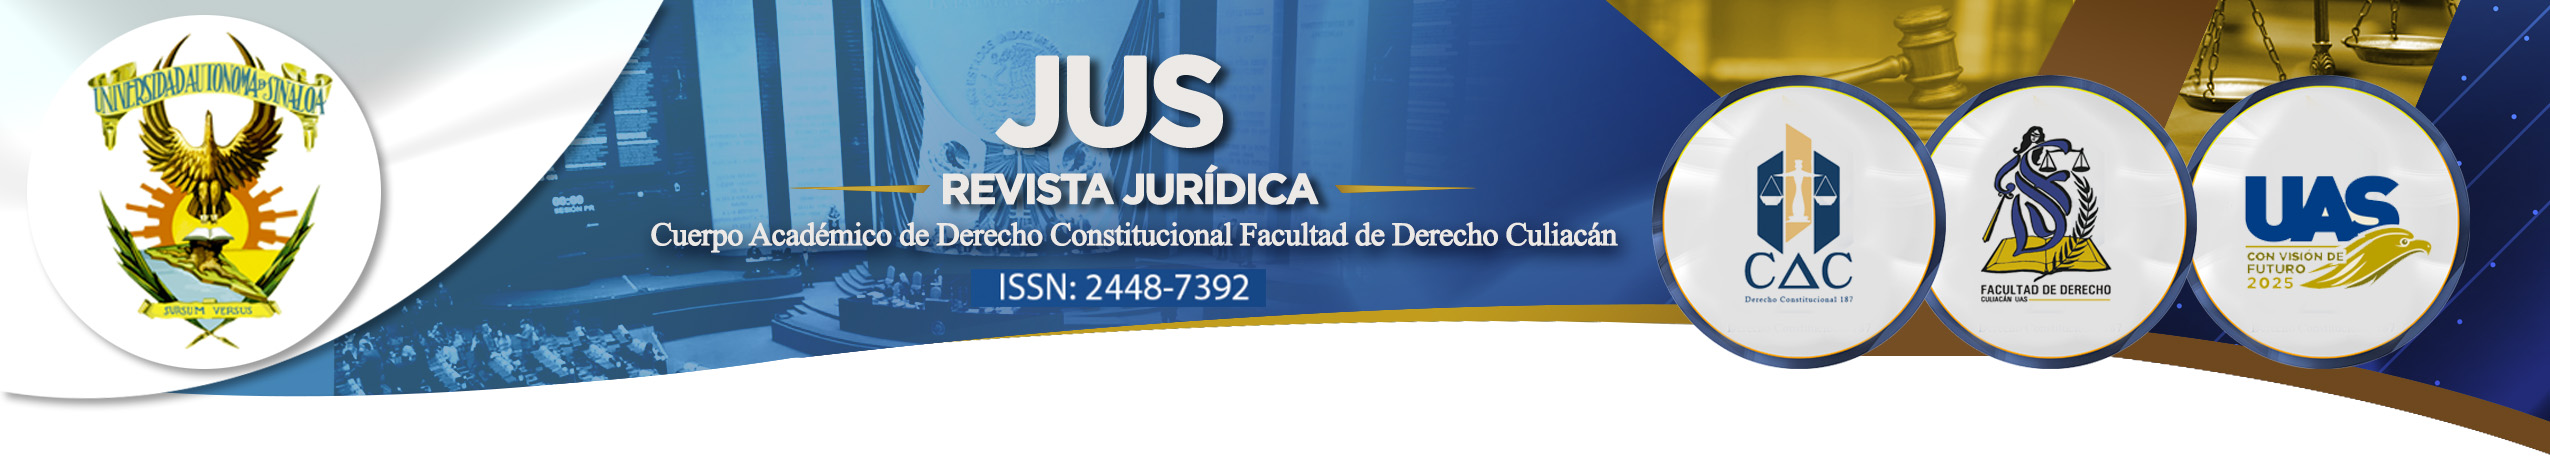 Logo JUS. REVISTA JURÍDICA. CUERPO ACÁDEMICO DE DERECHO CONSTITUCIONAL FACULTAD DE DERECHO CULIACAN